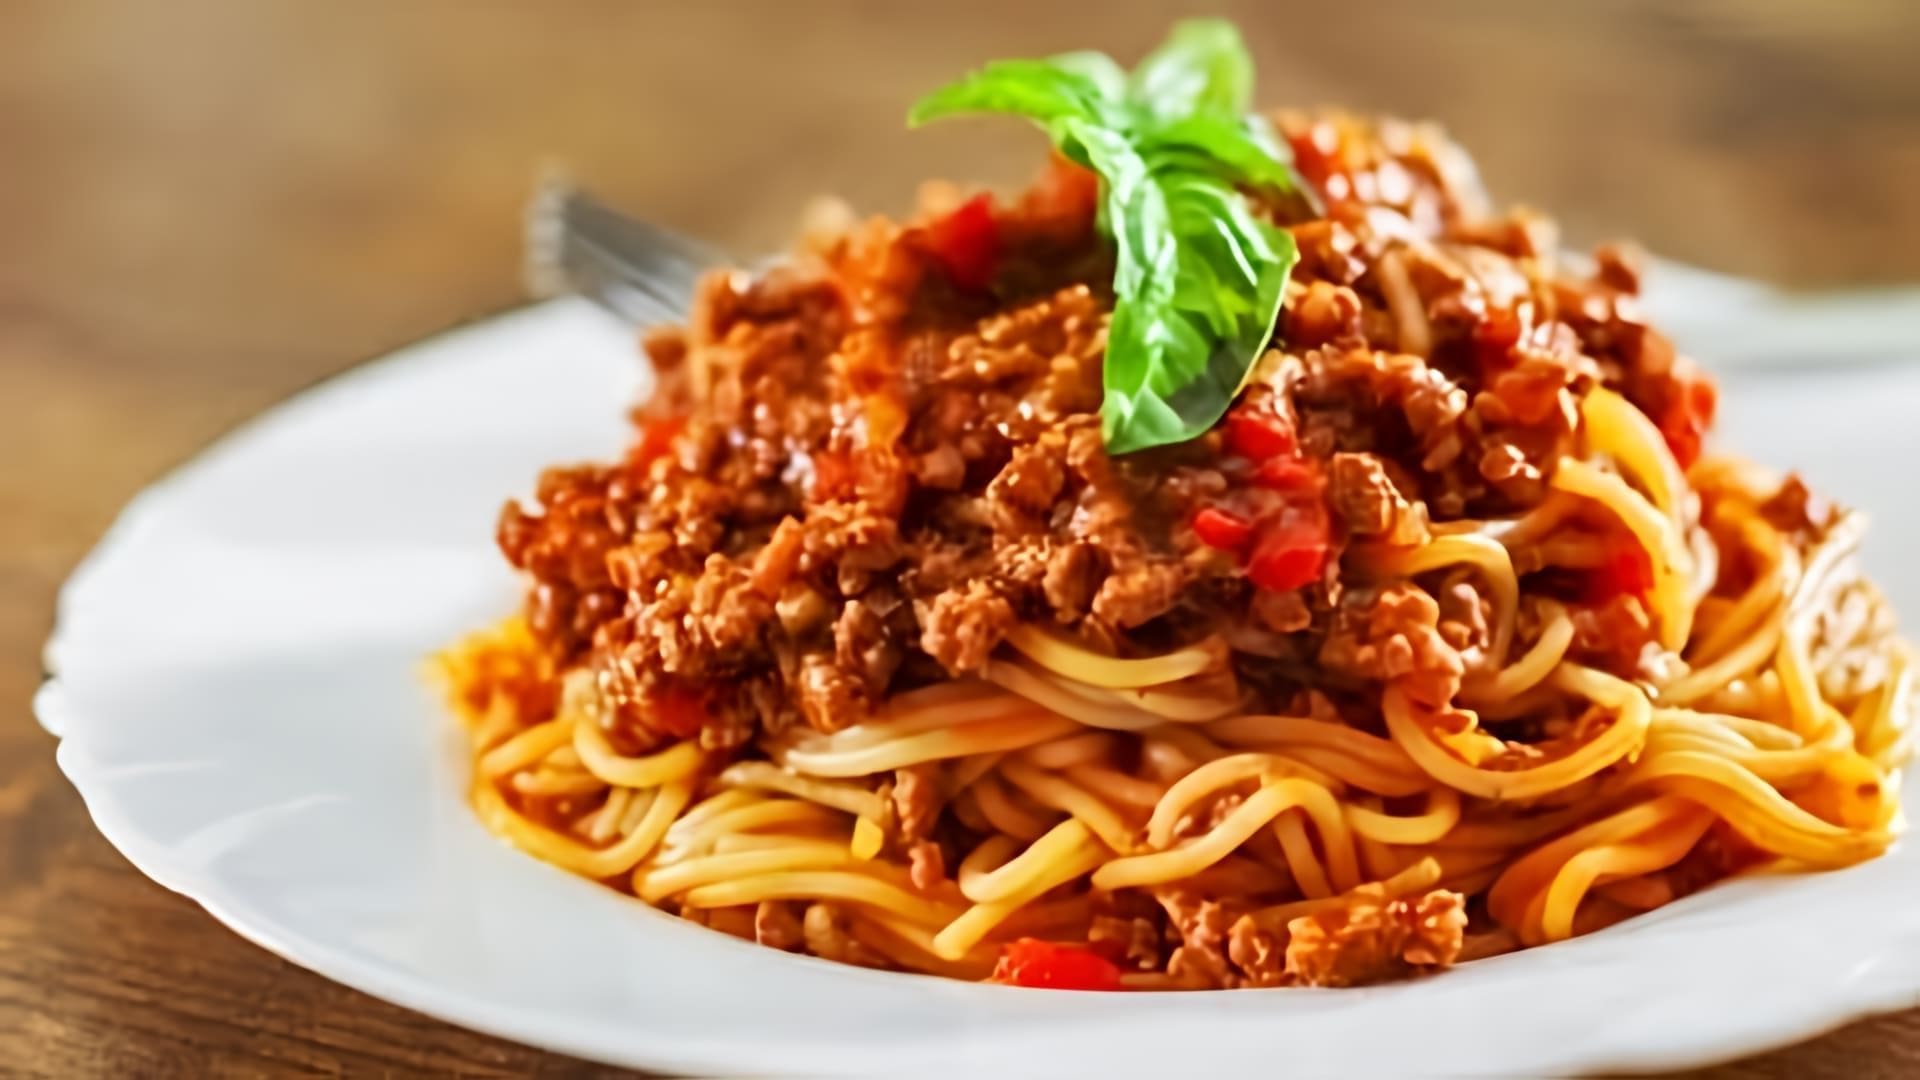 В этом видео демонстрируется процесс приготовления спагетти с соусом болоньезе